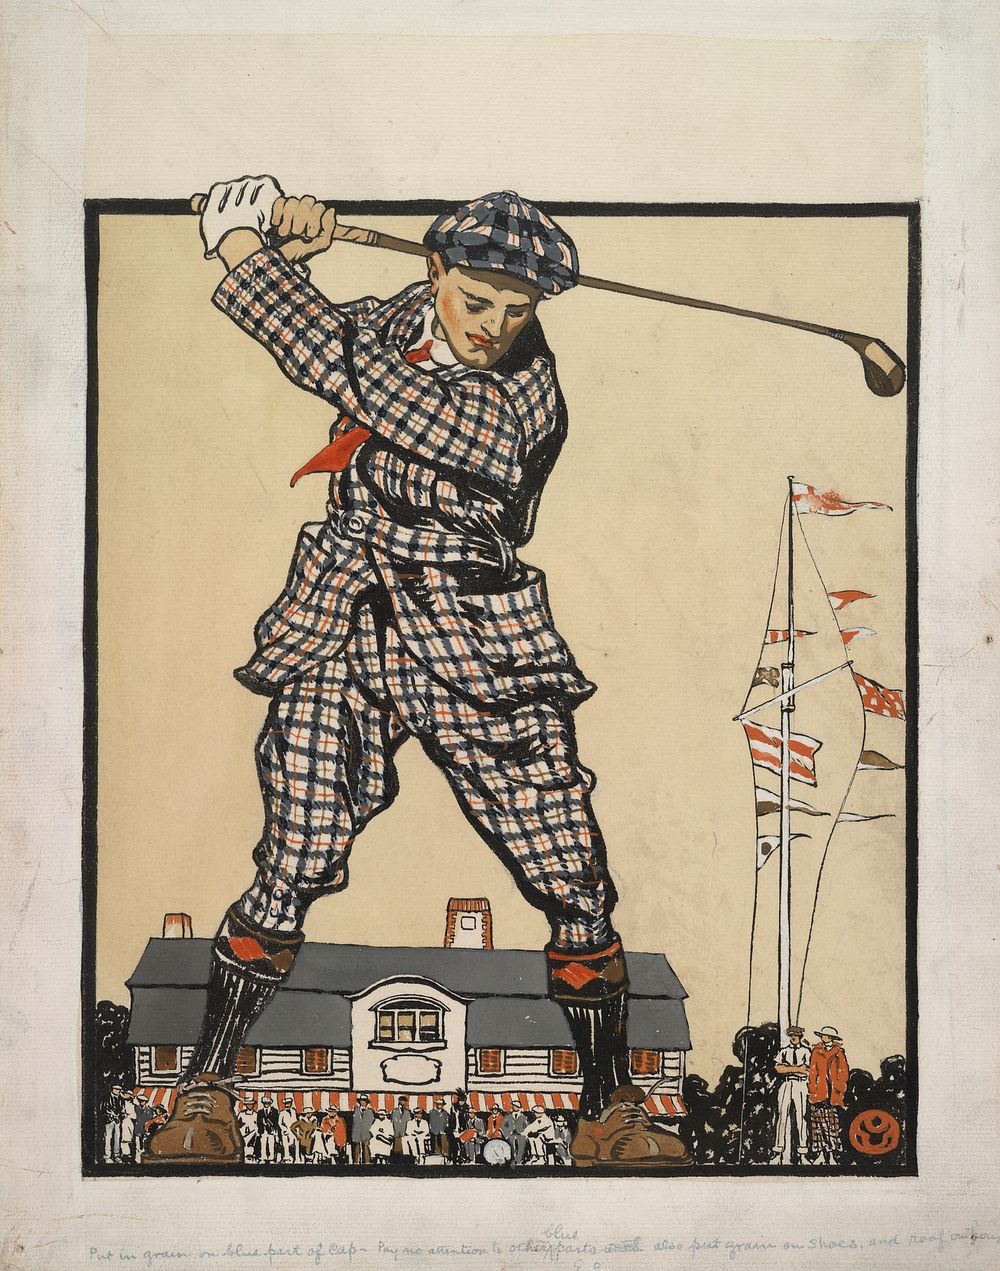 Man swinging golf club (1915) by Edward Penfield